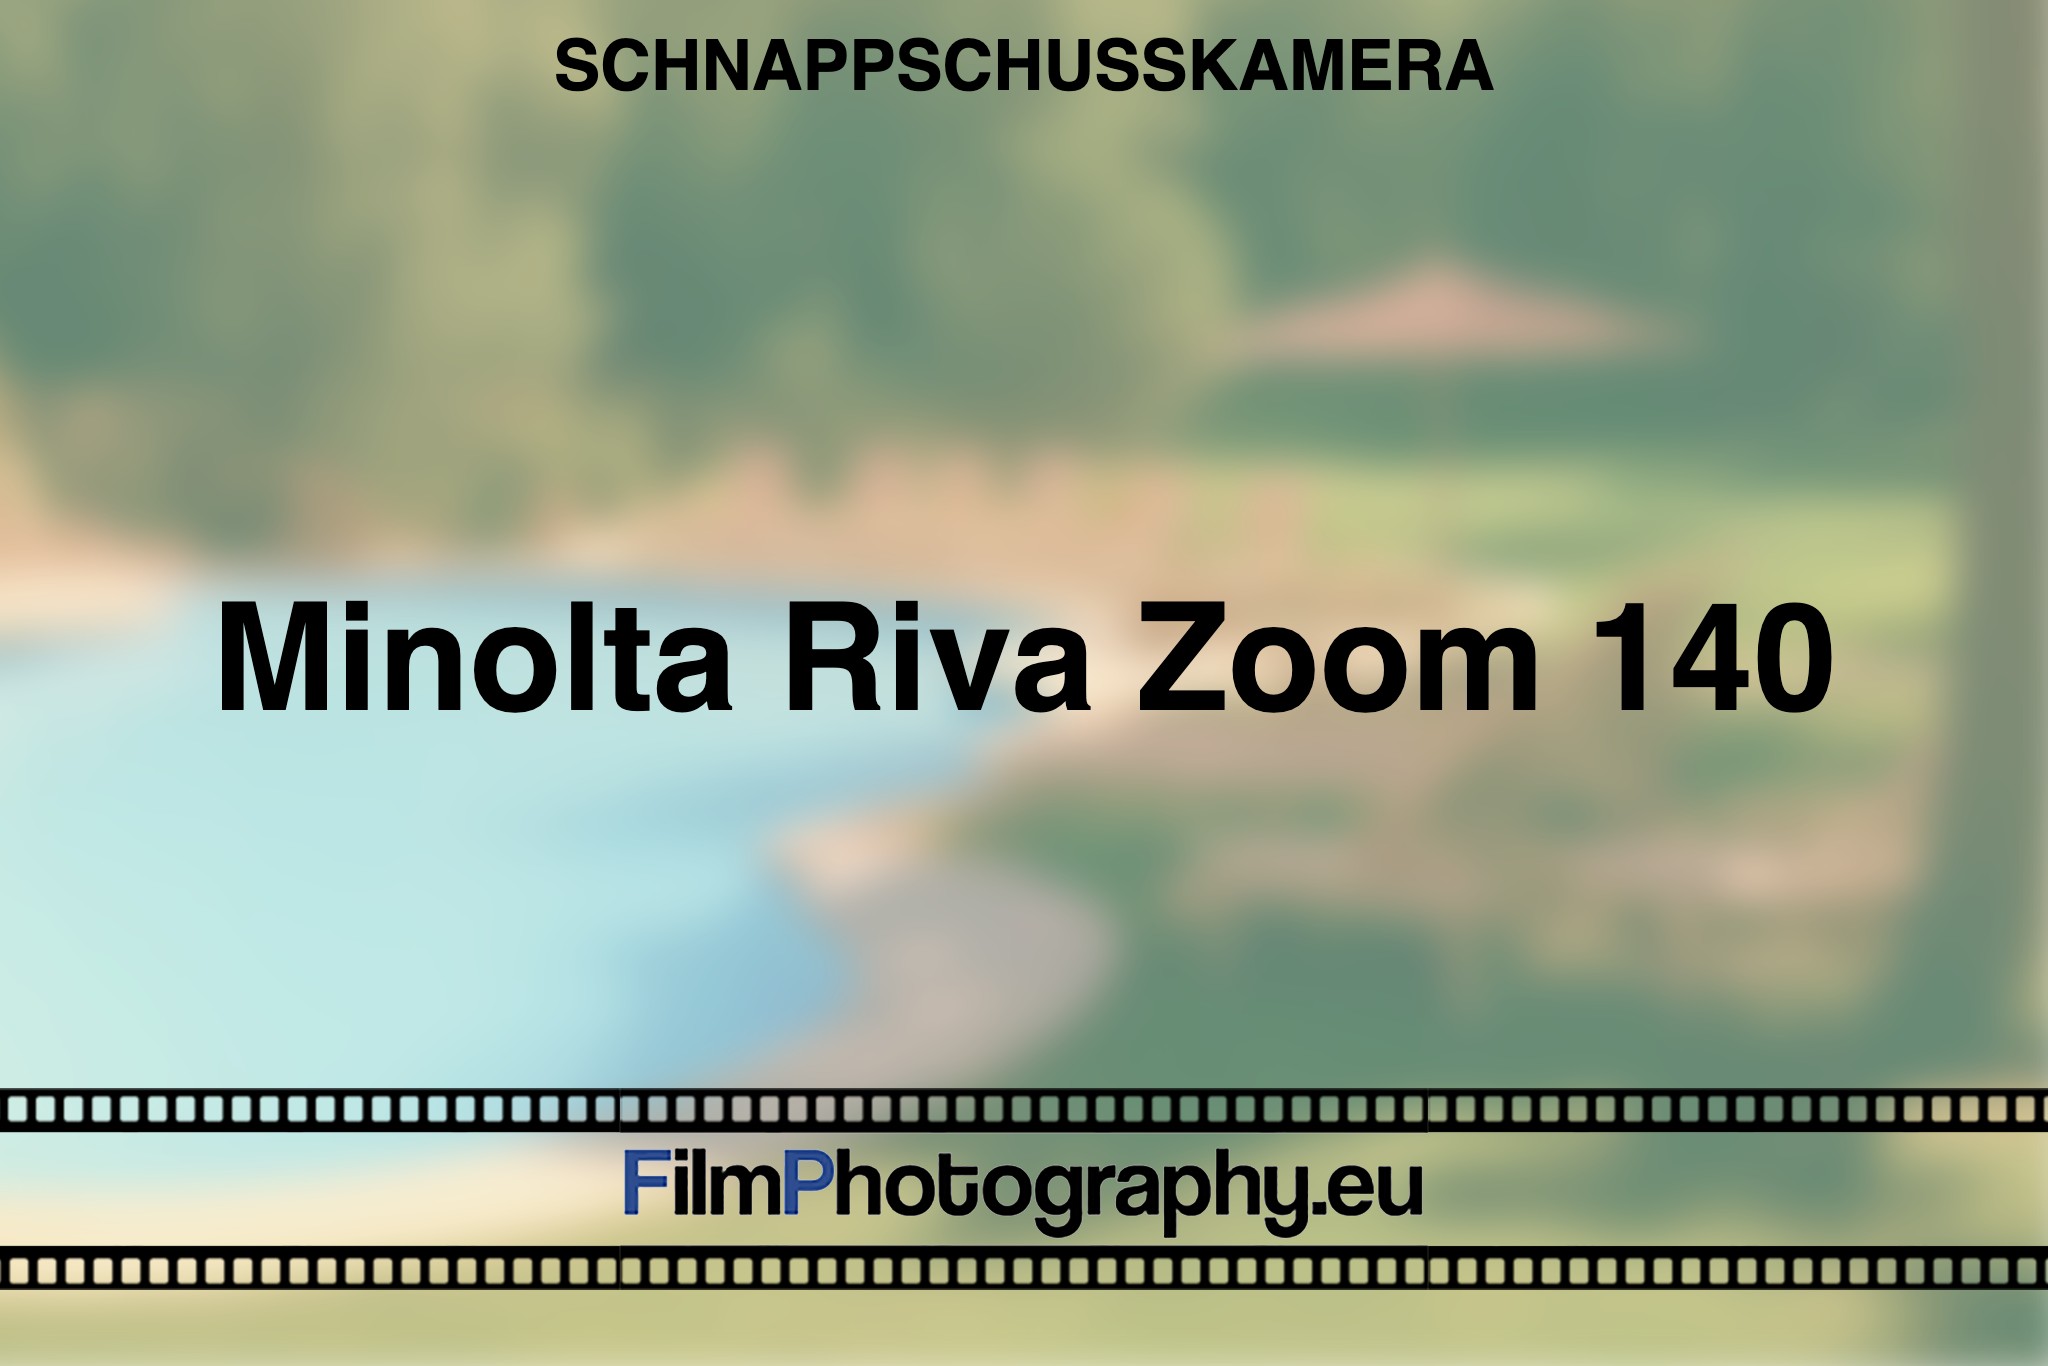 minolta-riva-zoom-140-schnappschusskamera-bnv